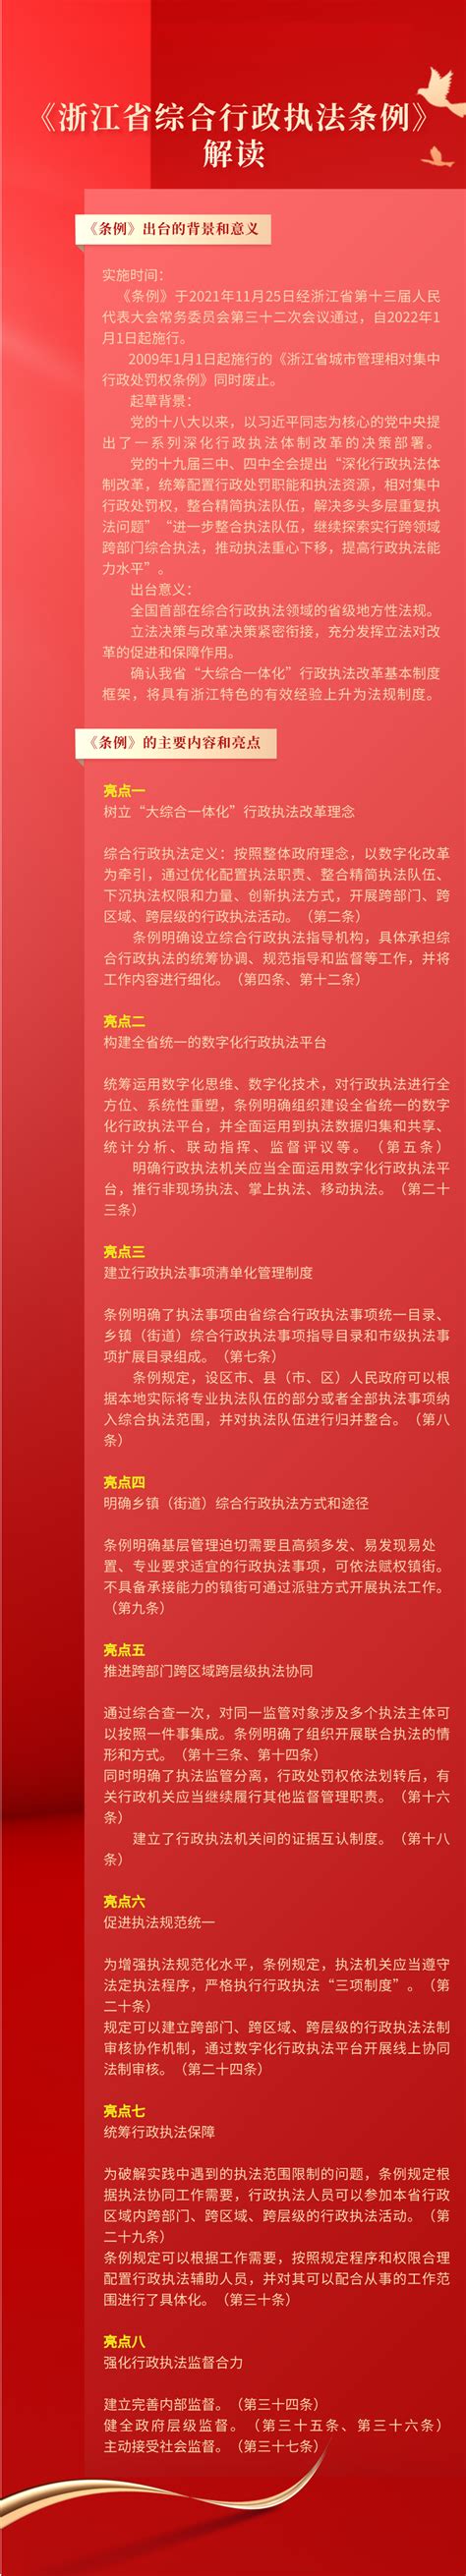 浙江省行政区划（浙江的行政区域划分）_摘编百科